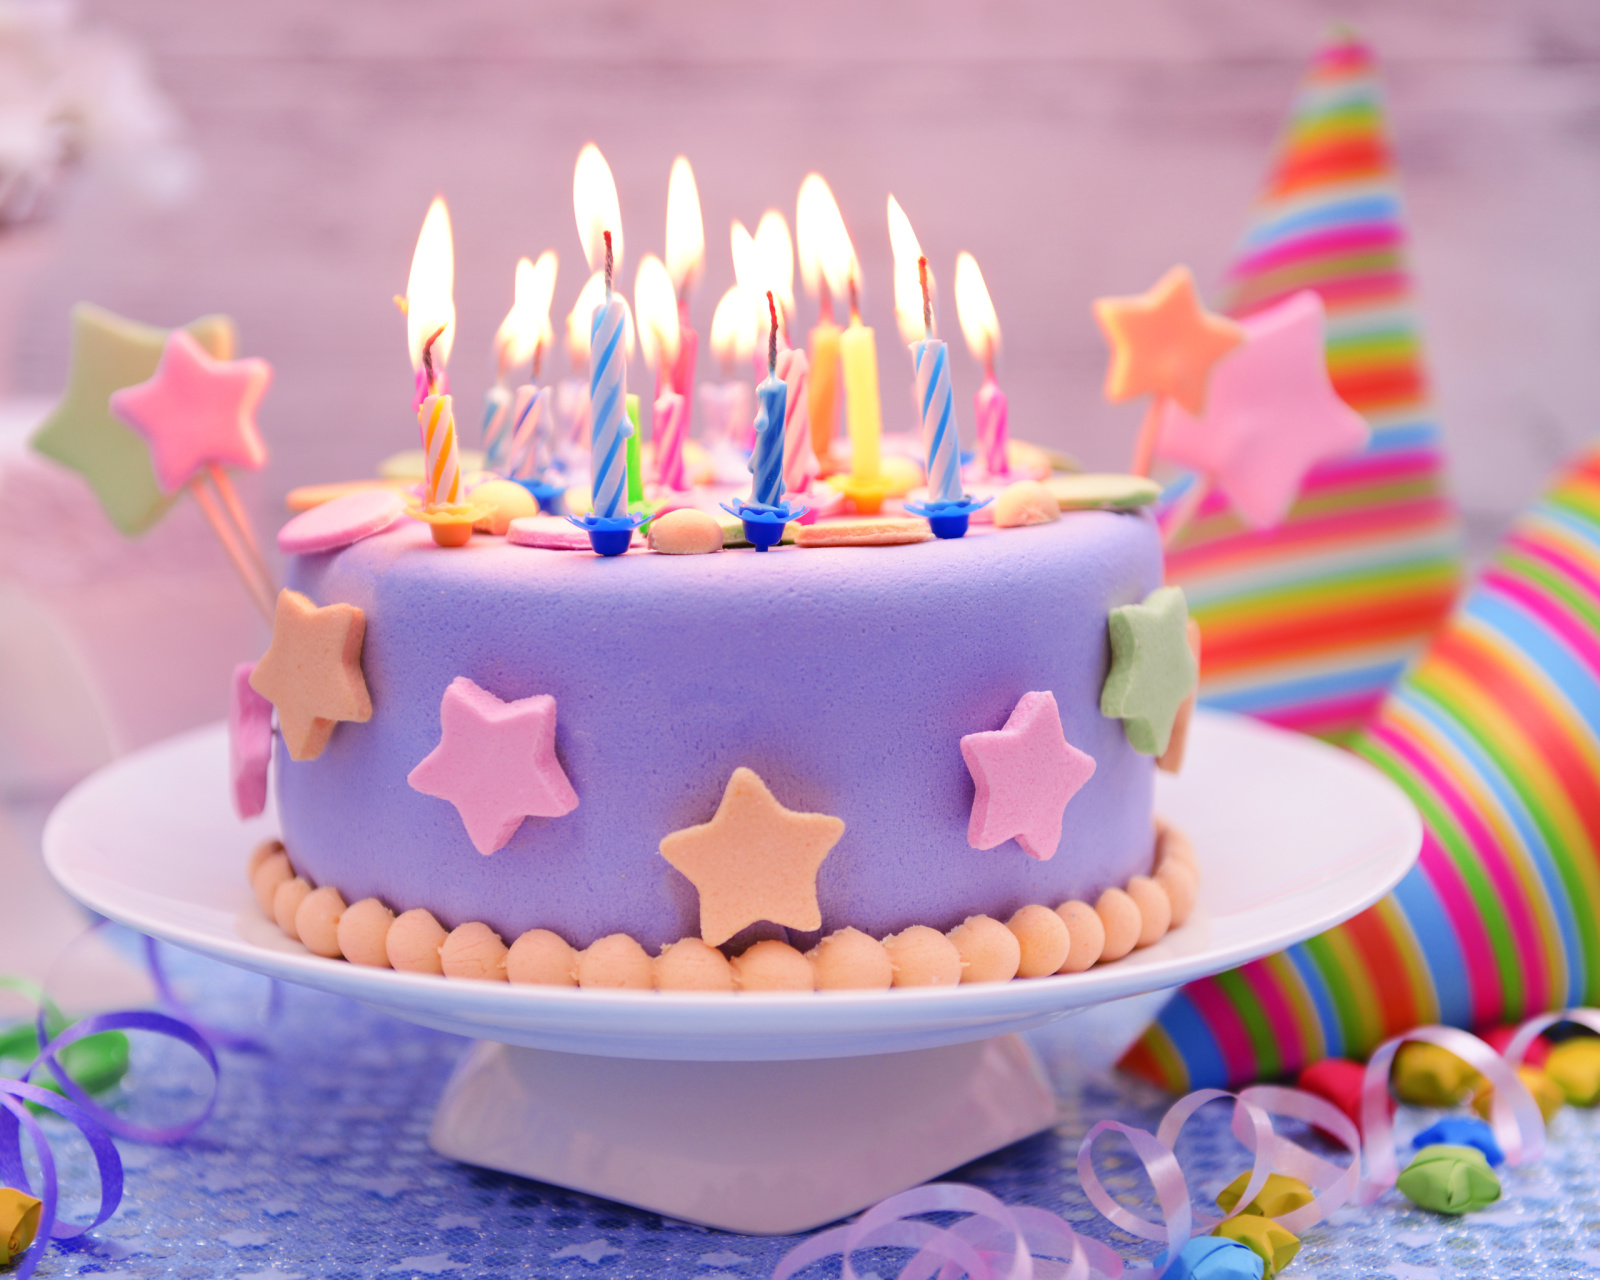 Обои Happy Birthday Cake 1600x1280